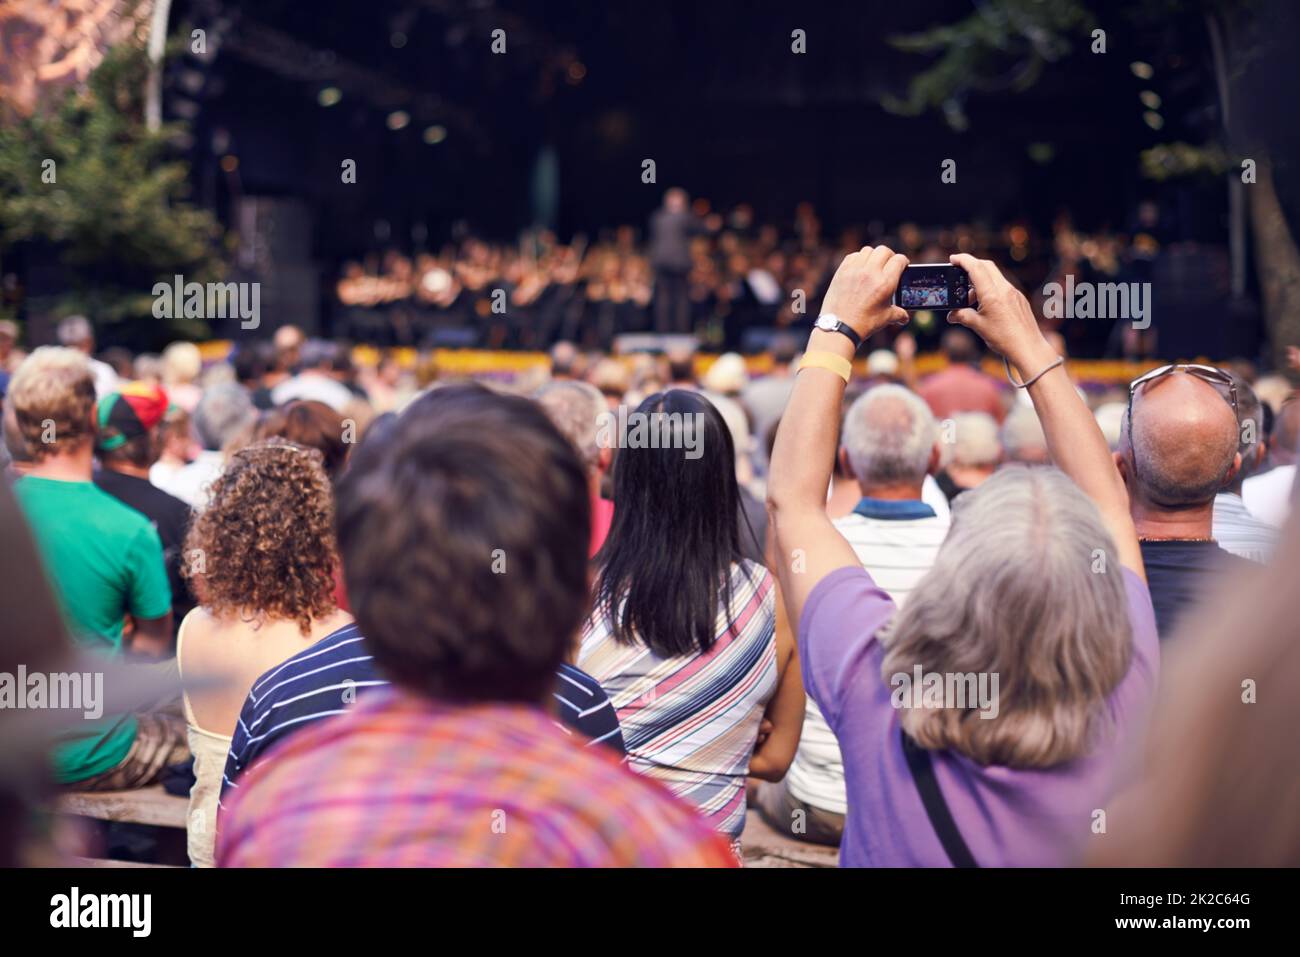 Les petits appareils photo capturent de superbes souvenirs. Photo d'une personne dans la foule tenant un appareil photo pour photographier un concert classique. Banque D'Images